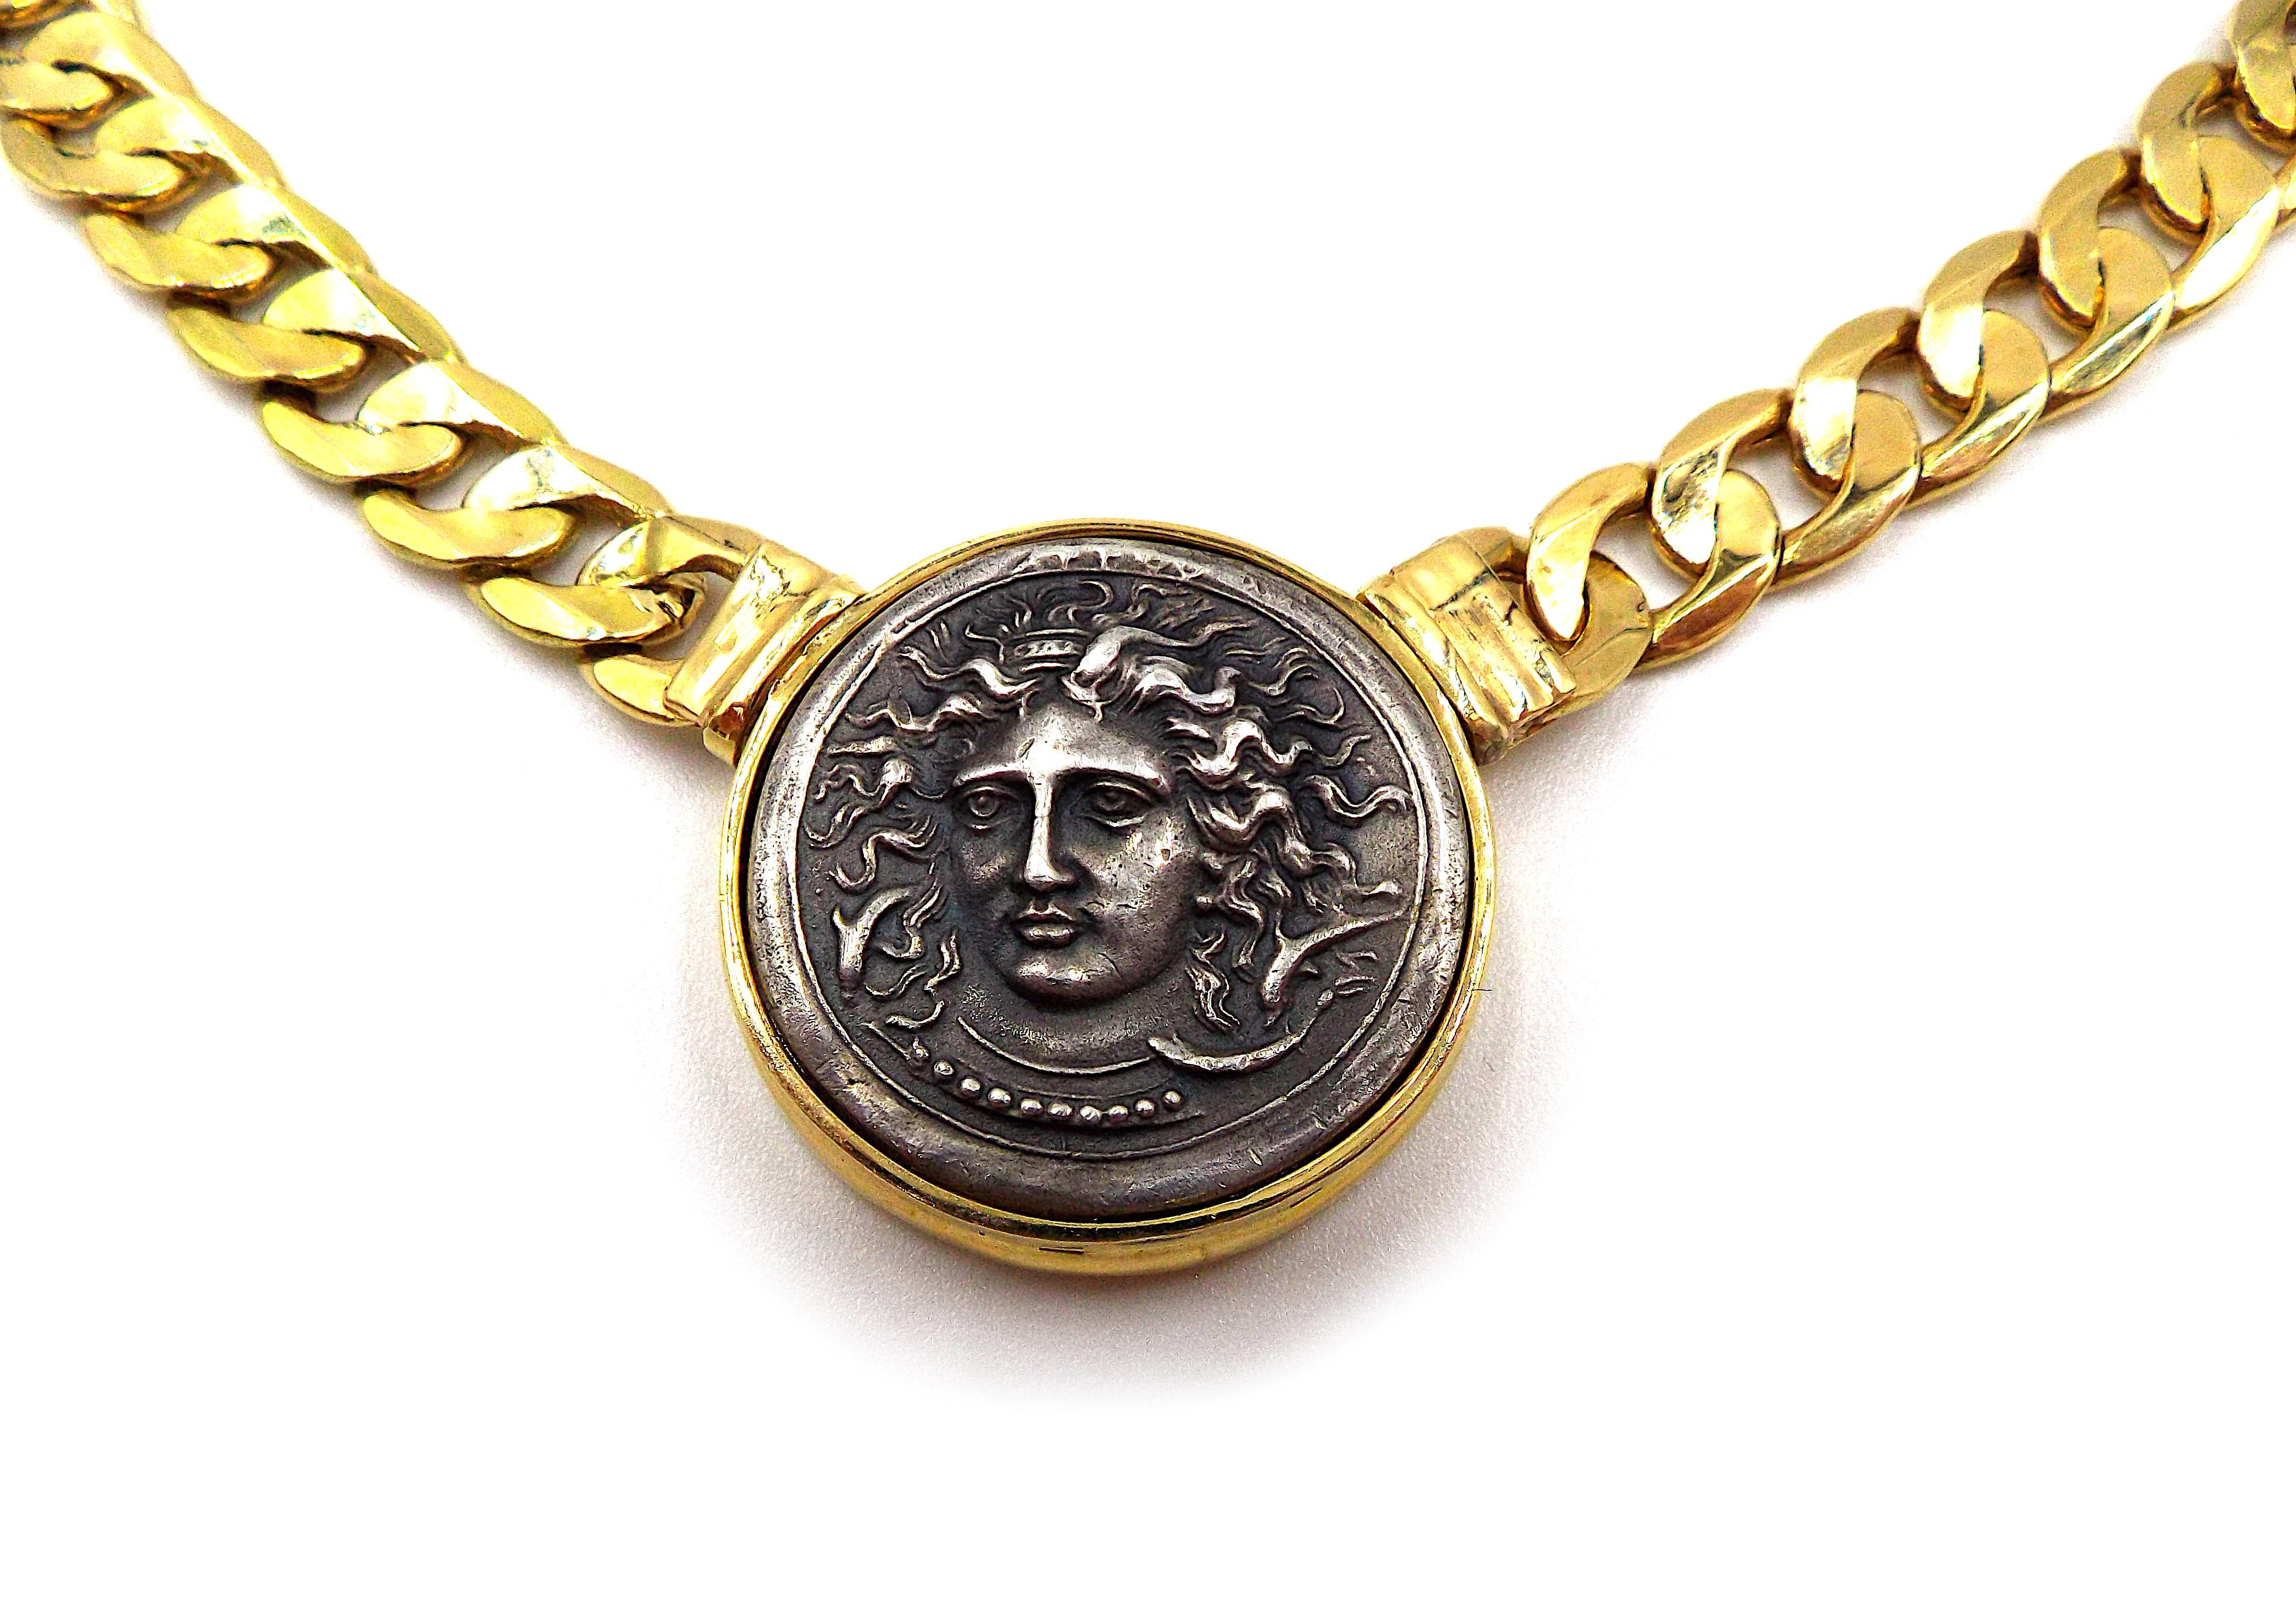 Eine goldene Halskette im Vintage-Stil mit einer antiken Silbermünze. Mit italienischen Registriermarken, gestempelt 750. Die Länge der Halskette beträgt ca. 16,5 cm. Der Münzdurchmesser beträgt etwa 1 Zoll. Das Gewicht beträgt 53.5 Gramm.